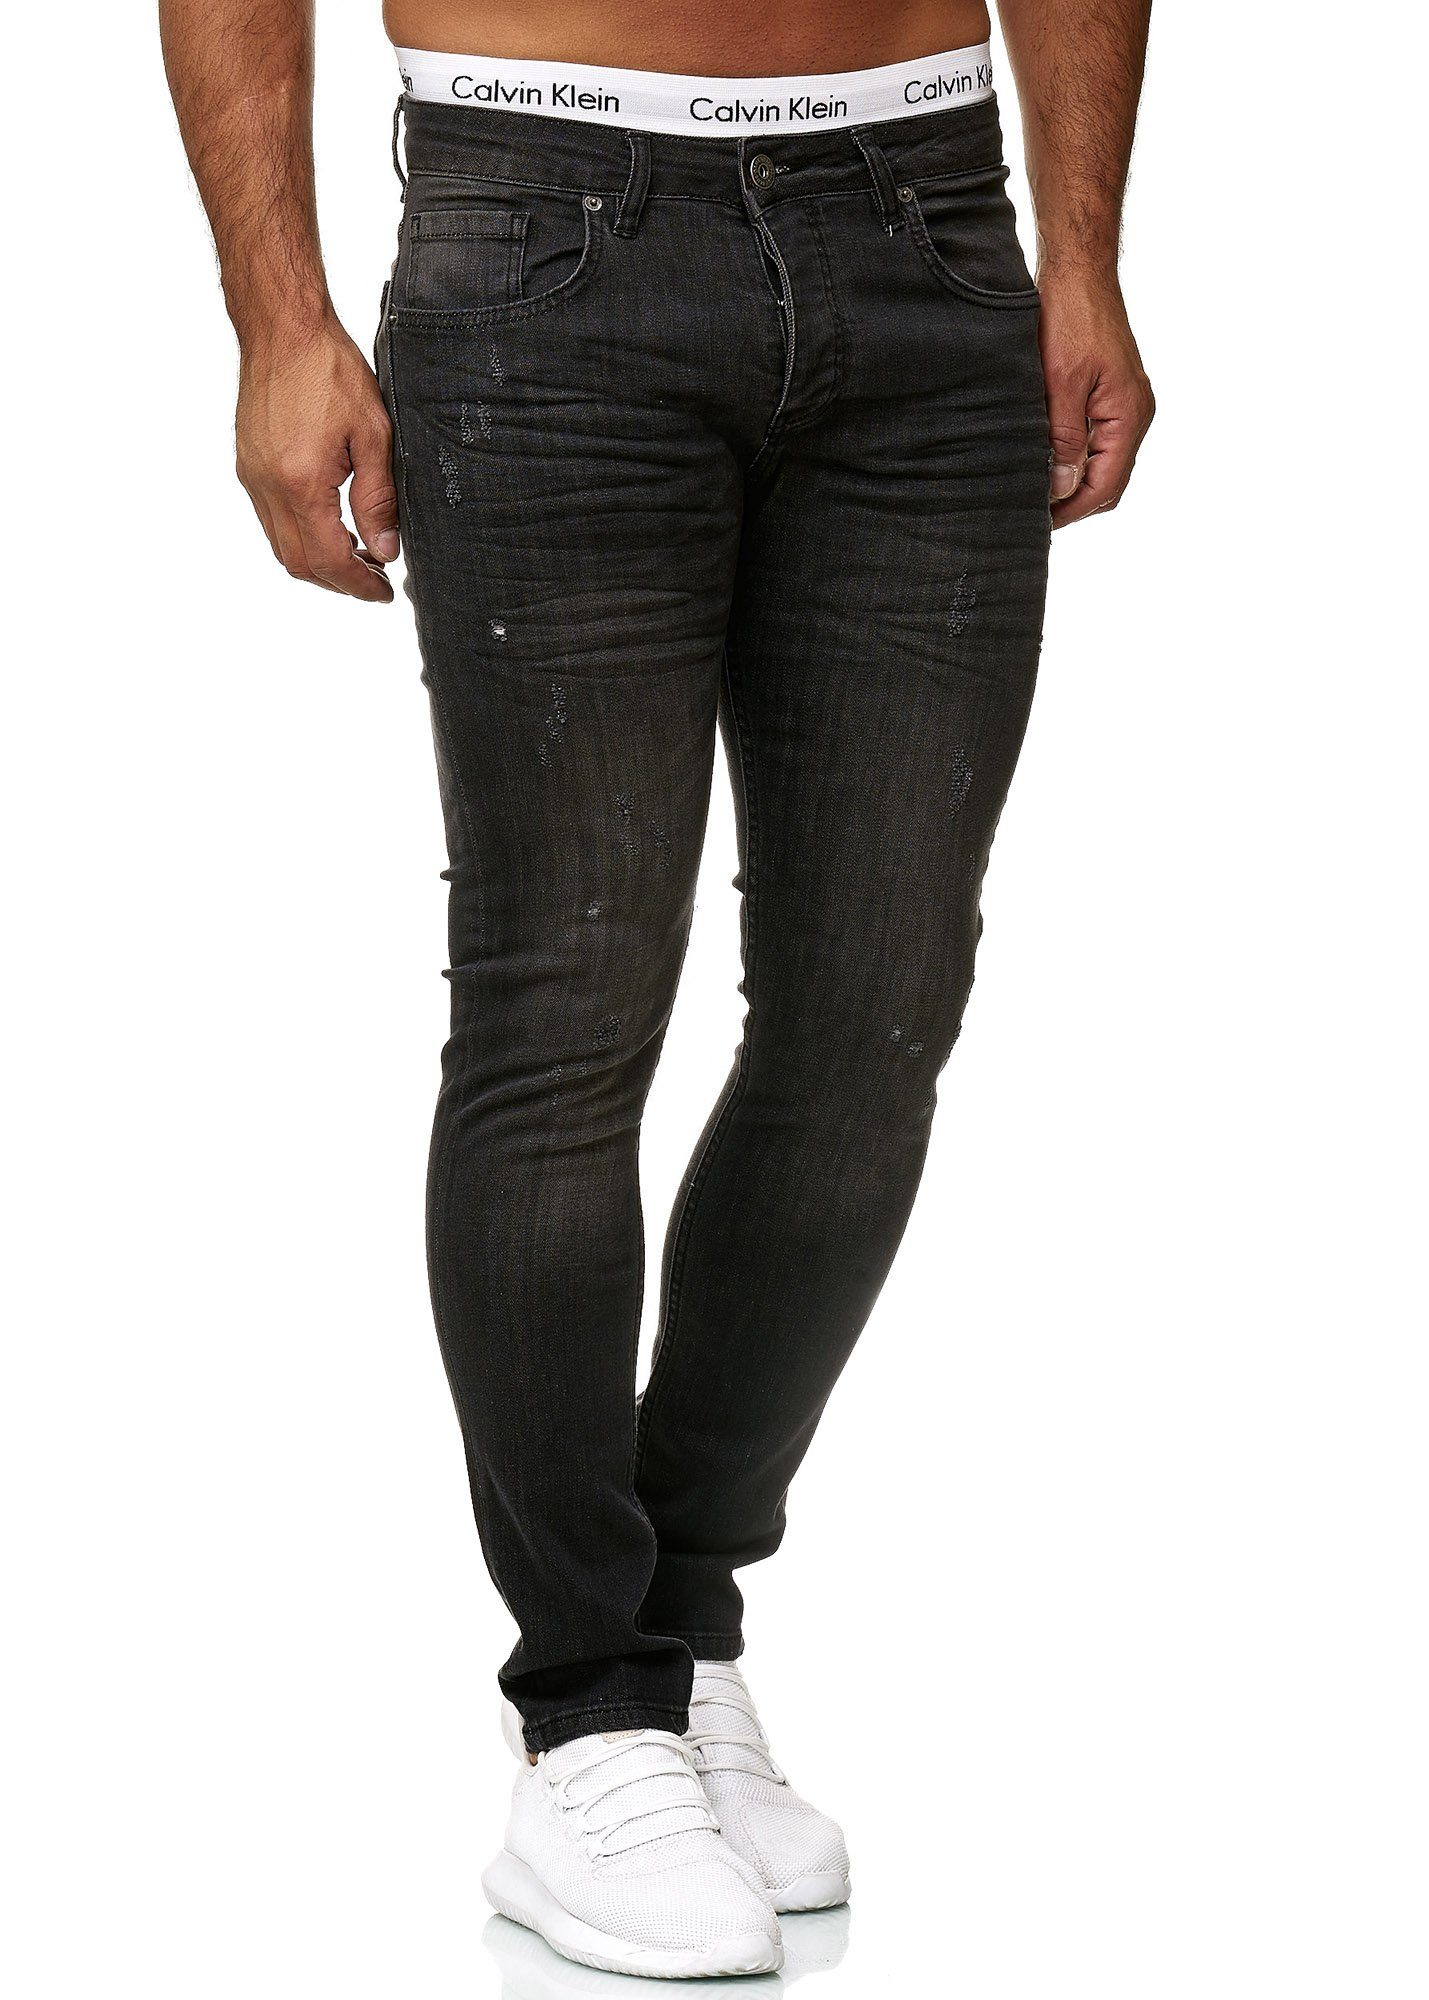 Code47 Skinny-fit-Jeans Code47 Designer Herren Jeans Hose Regular Skinny Fit Jeanshose Basic 606 Light Black Used